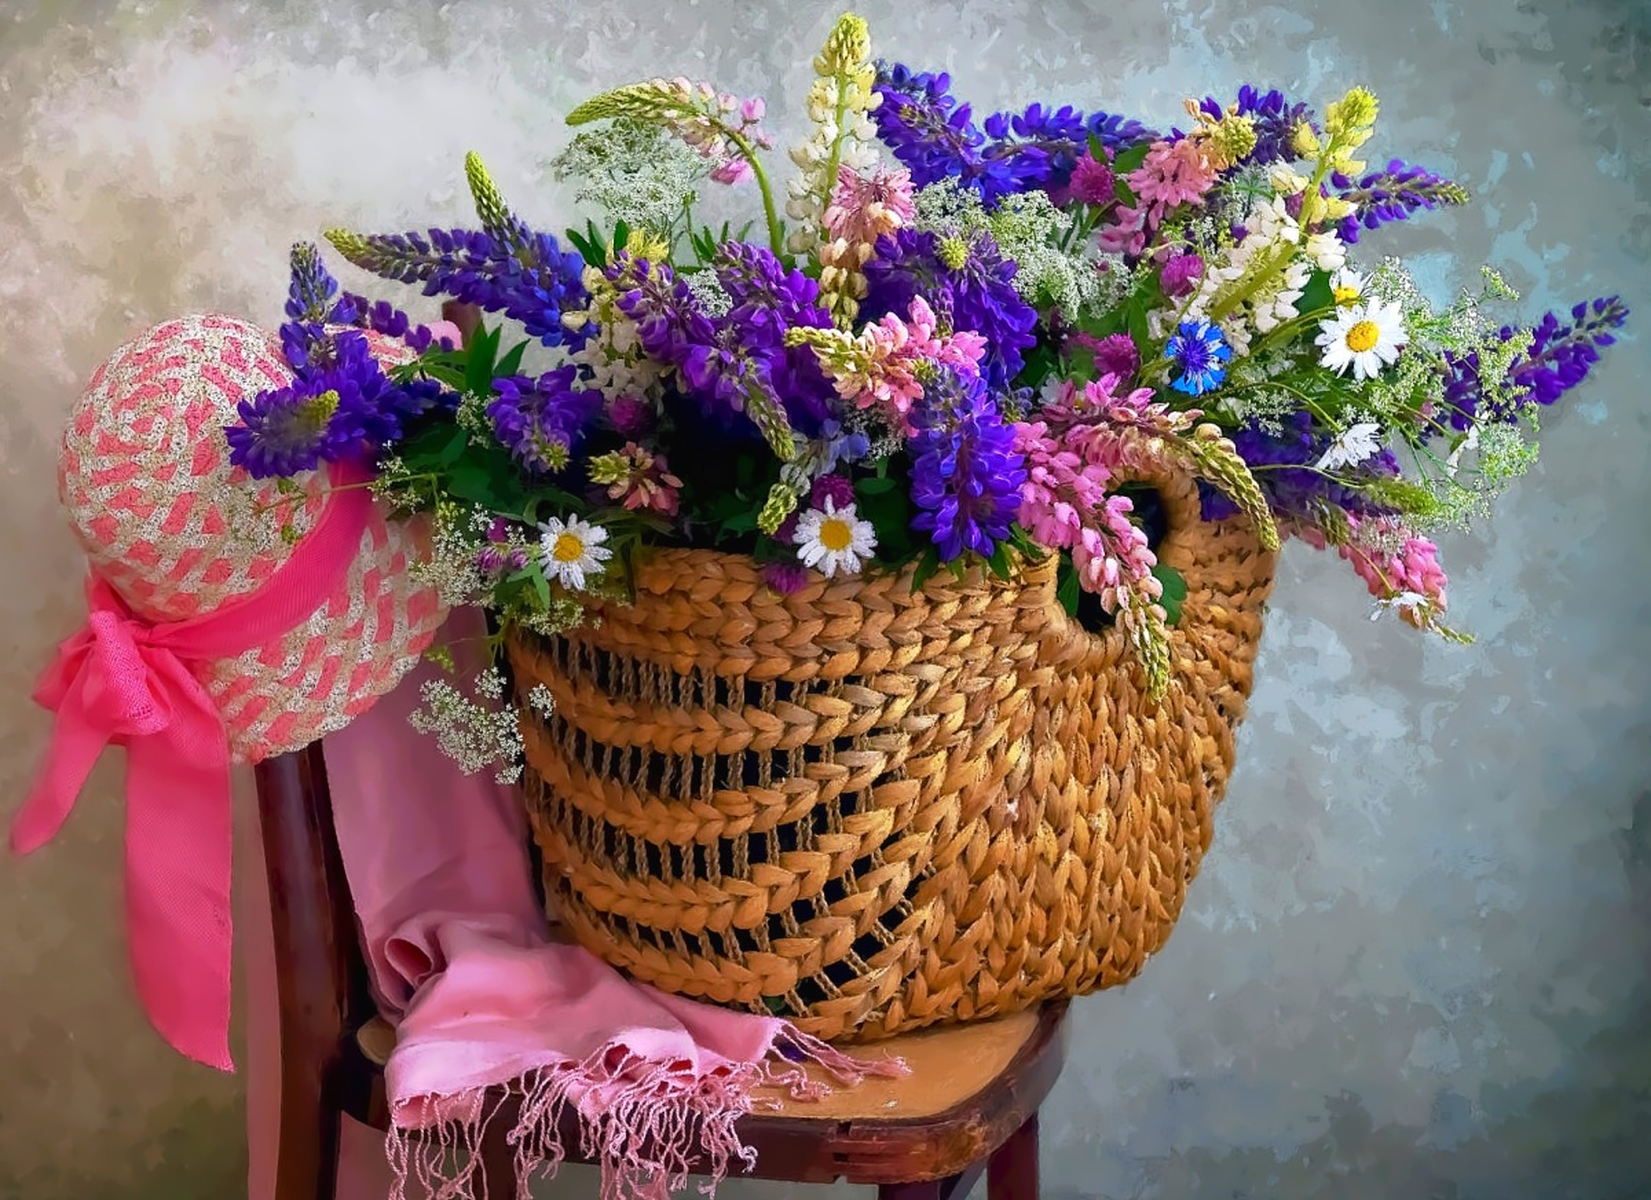 Полевые цветы в корзине